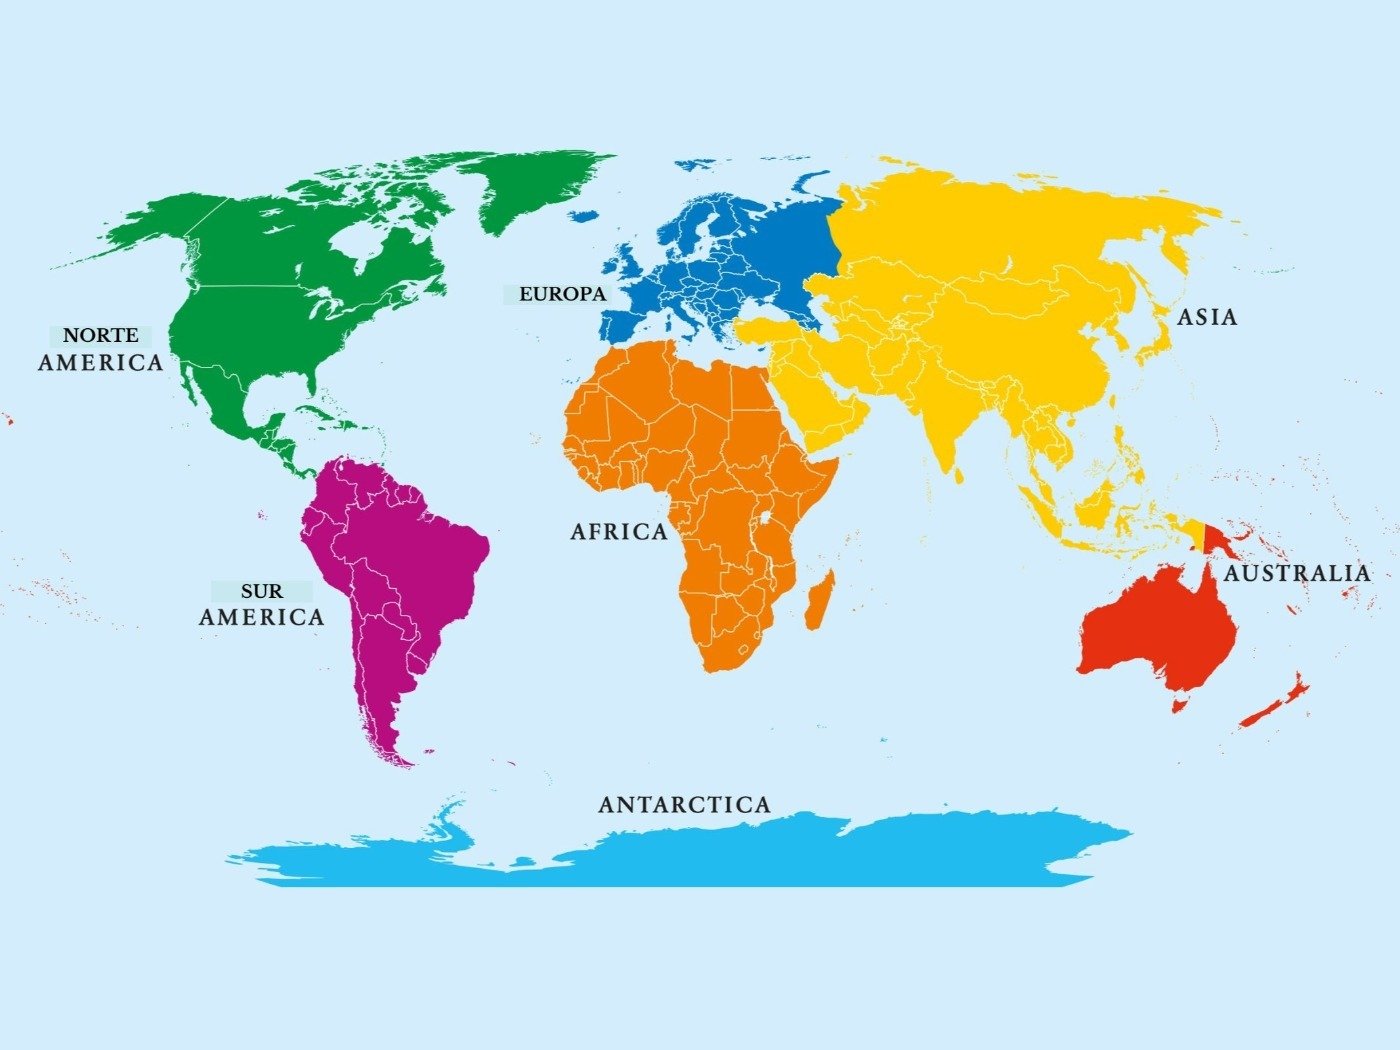 Океан между африкой и австралией. Части света Америка, Евразия, Северная Америка.. Части света. Карта континентов.